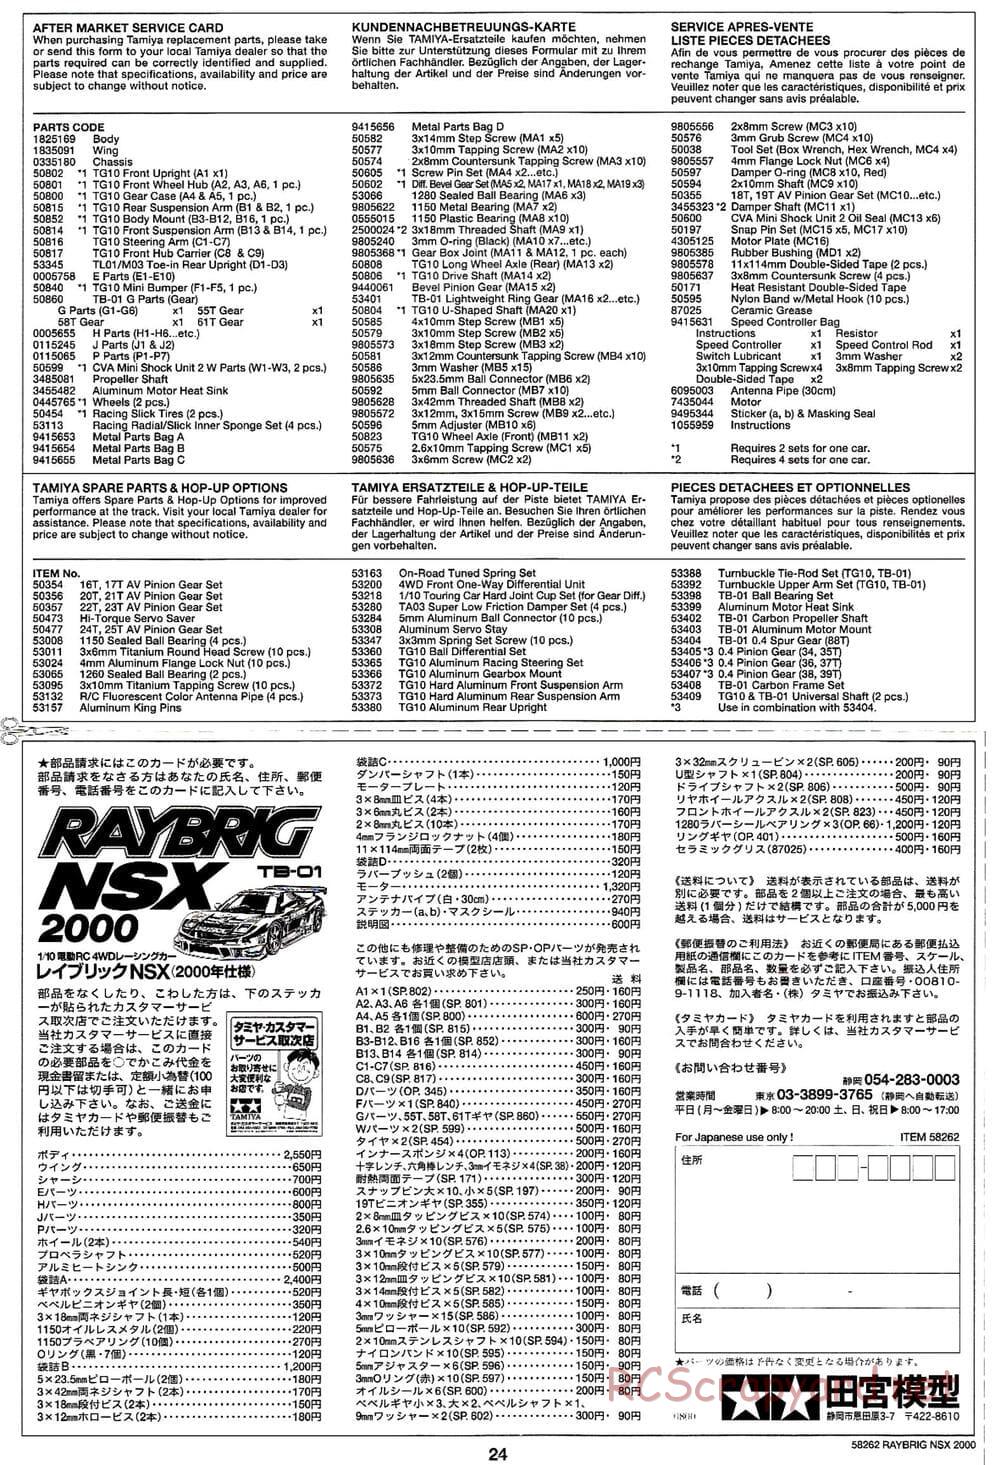 Tamiya - Raybrig NSX 2000 - TB-01 Chassis - Manual - Page 24